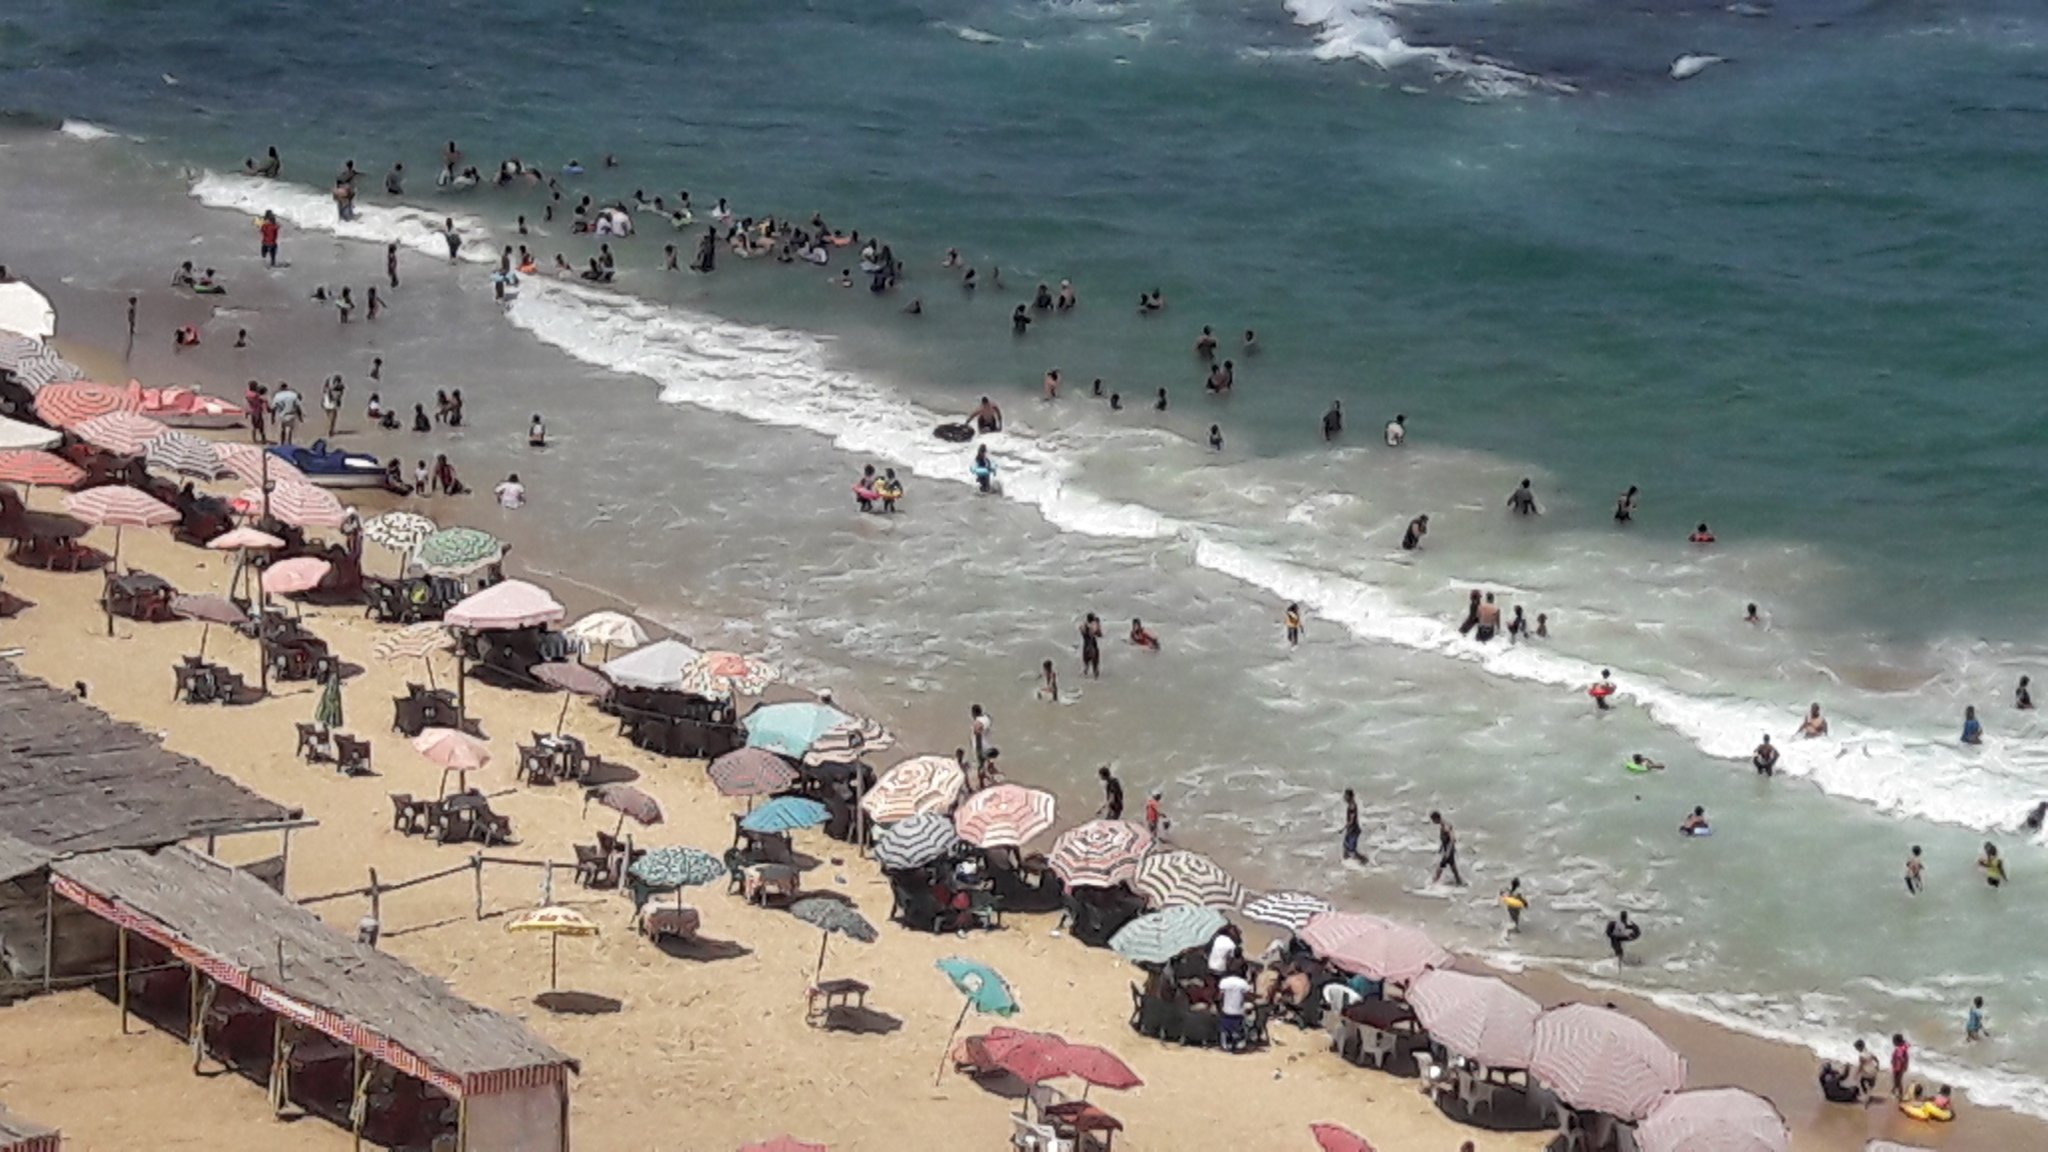 اقبال كبير على الشواطئ و المتنزهات بالاسكندرية لليوم الثالث من عيد الاضحى (5)